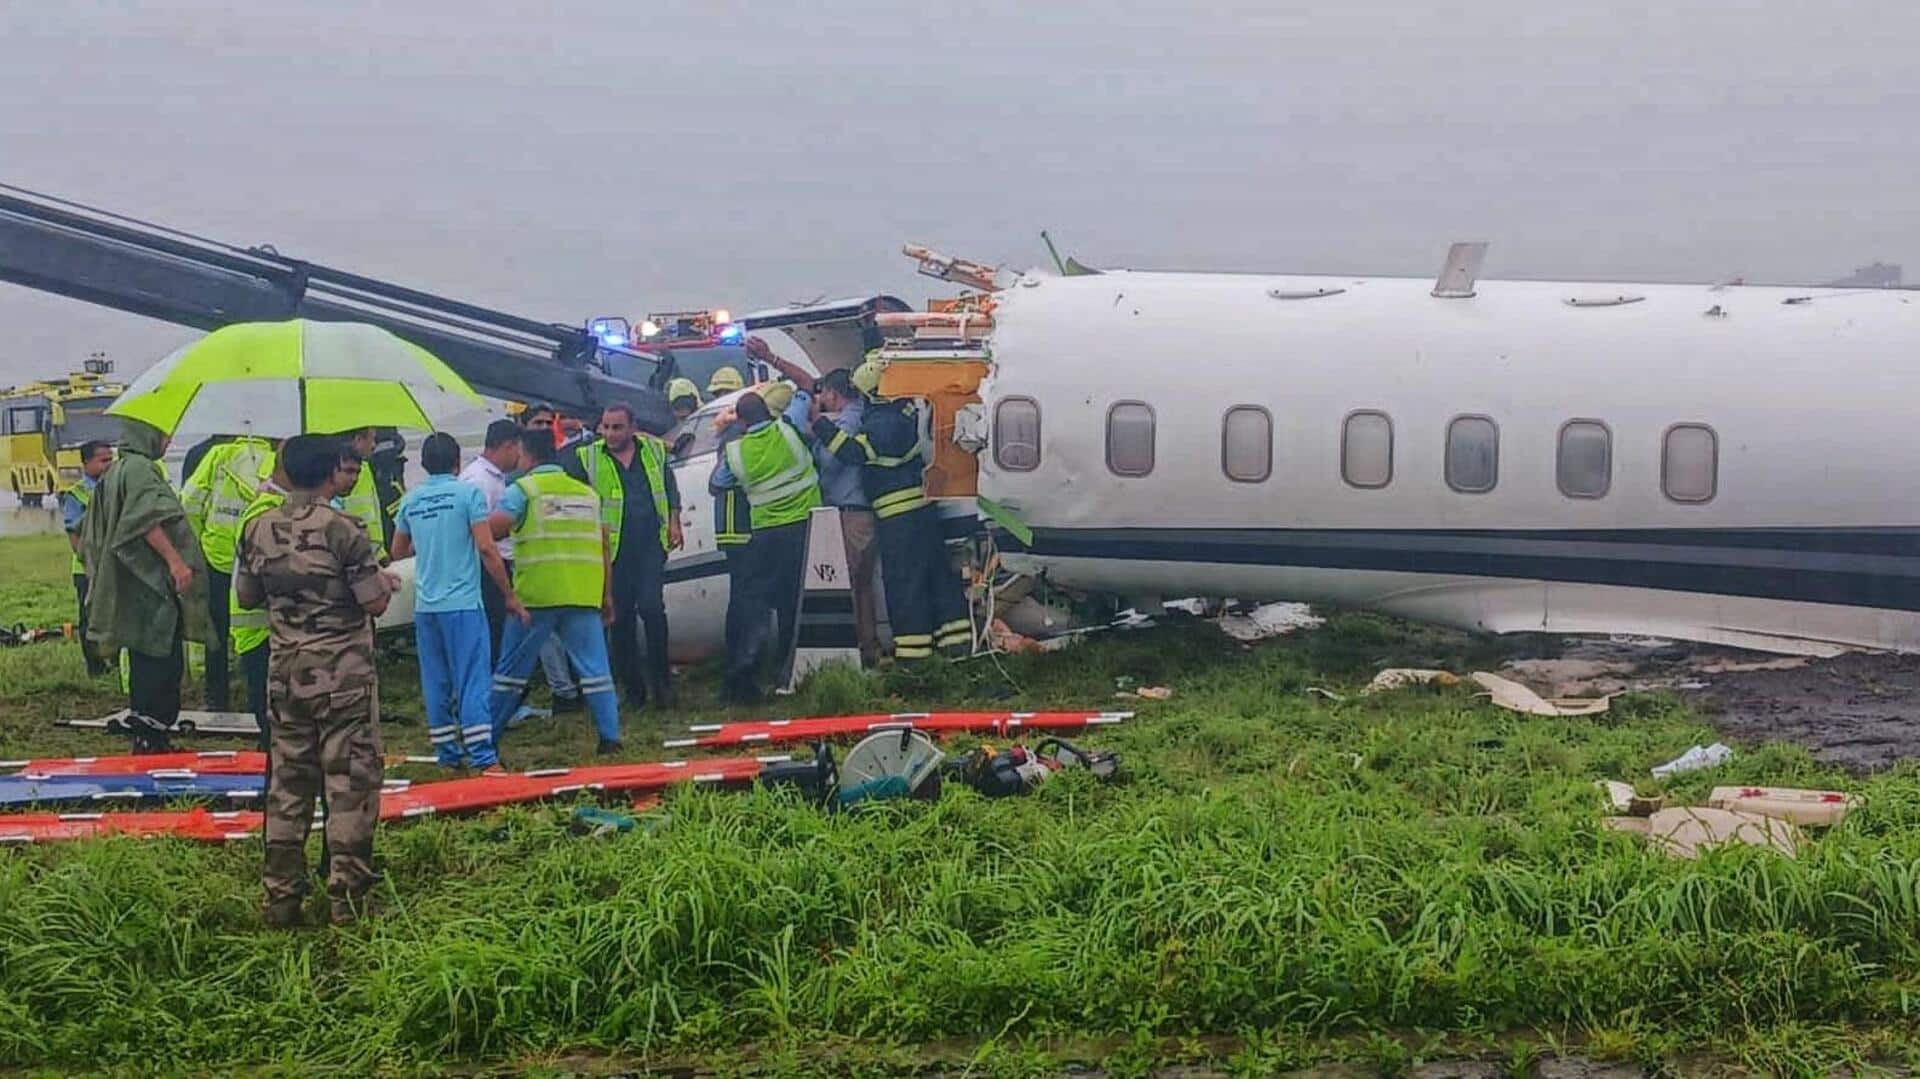 मुंबई हवाई अड्डे पर उतरते समय निजी चार्टर्ड विमान दुर्घटनाग्रस्त, 3 घायल